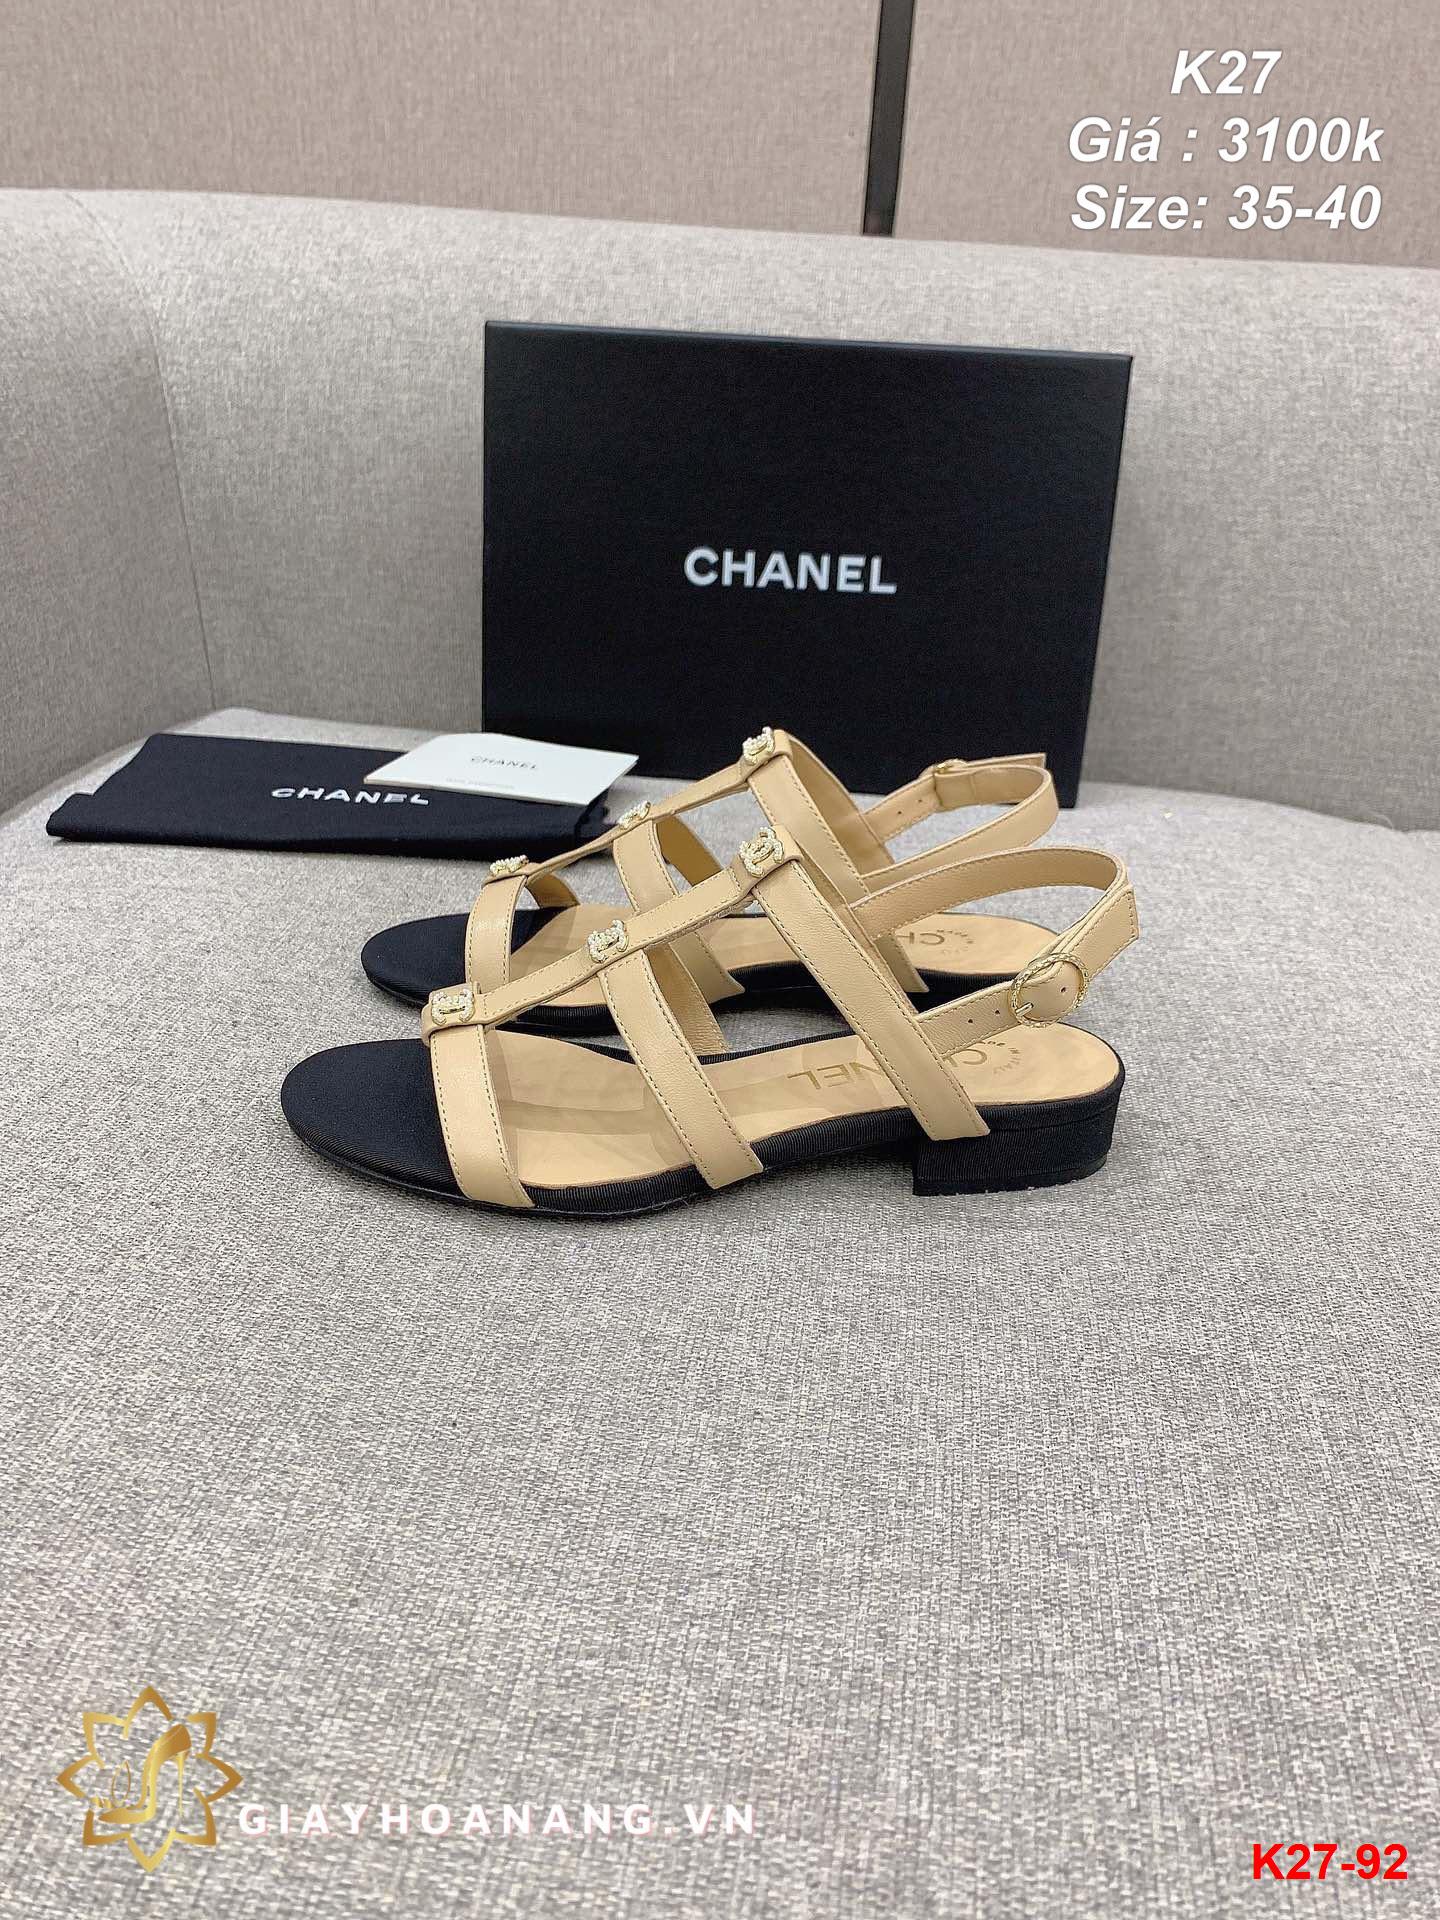 K27-92 Chanel sandal siêu cấp